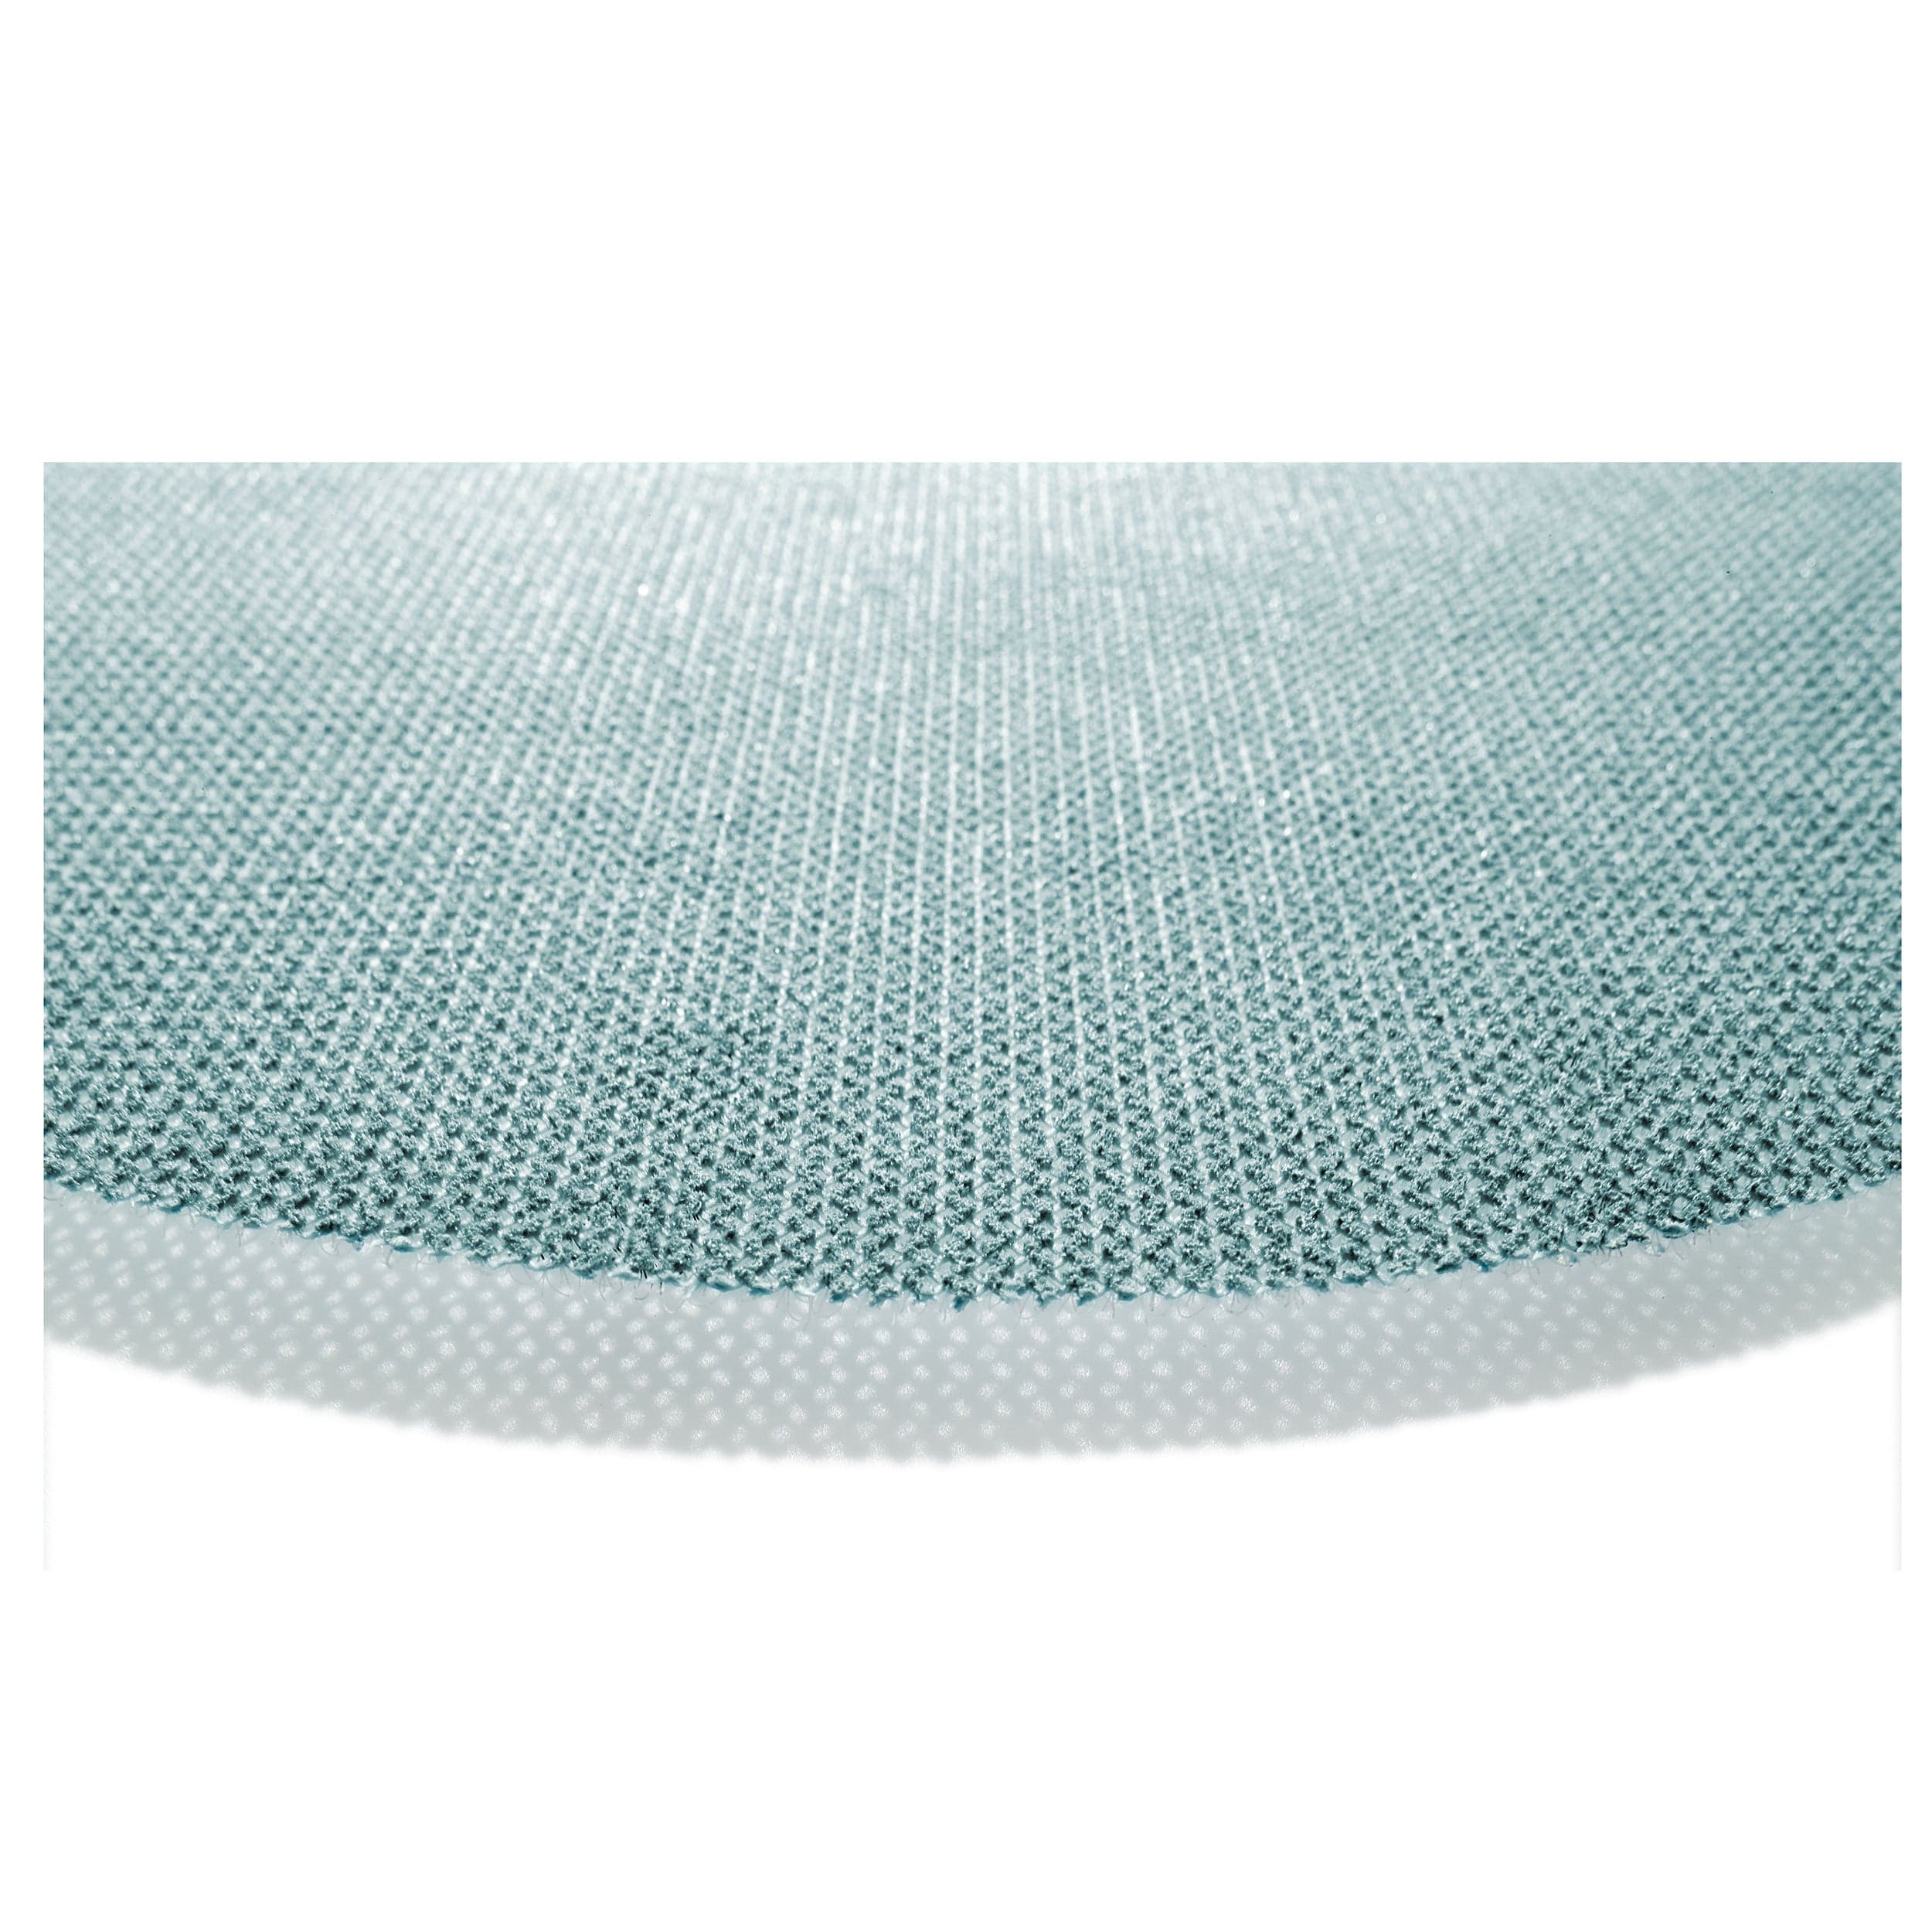 Granat Net Sanding Disc